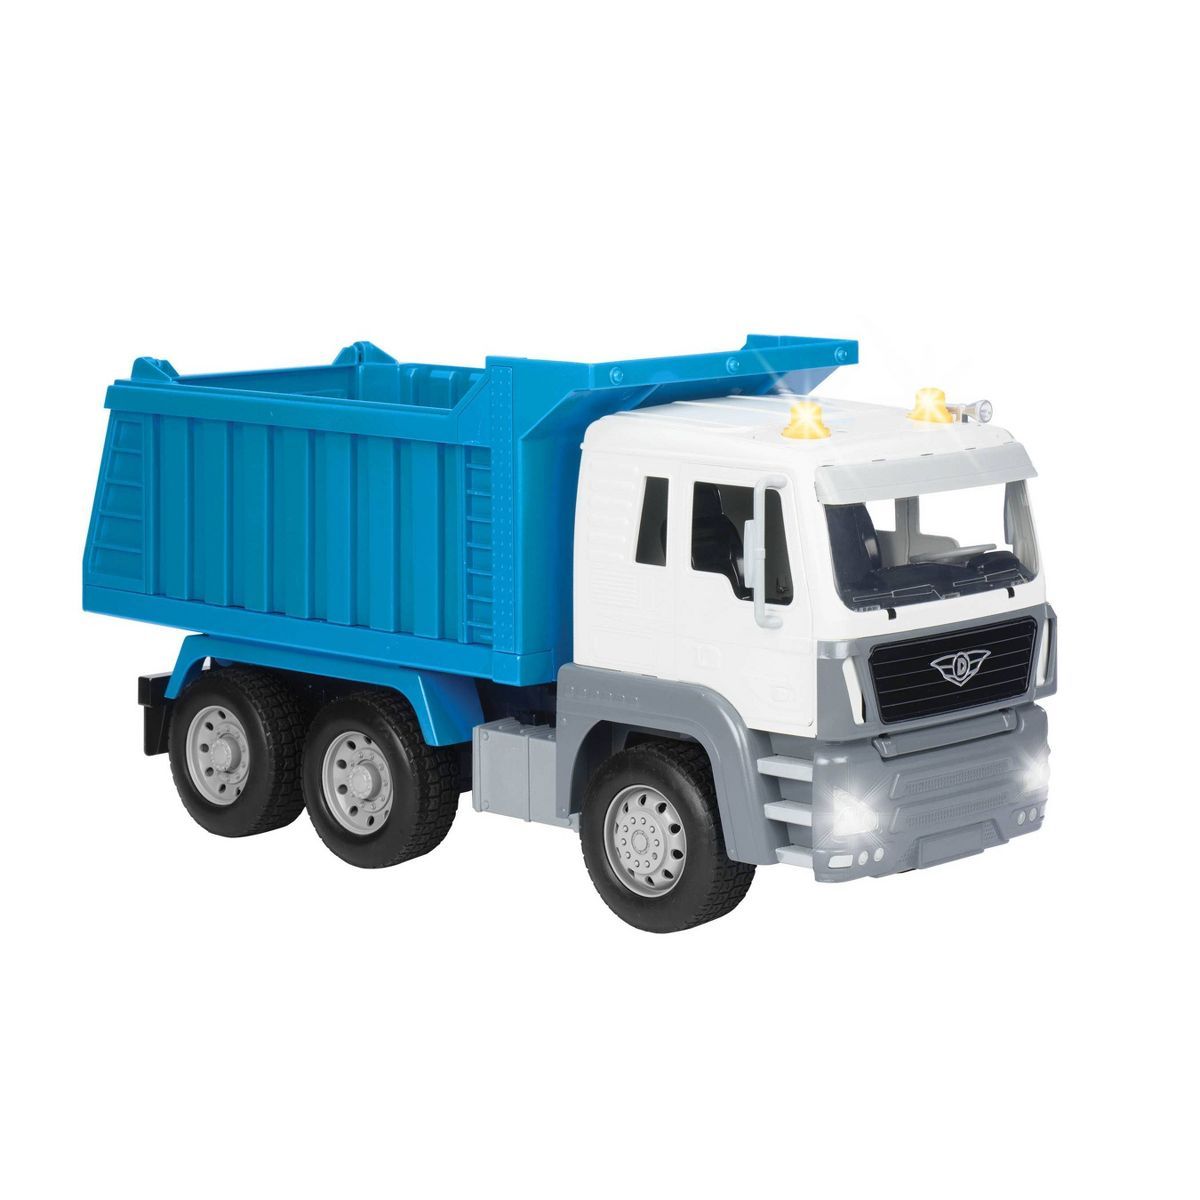 DRIVEN by Battat – Toy Dump Truck – Standard Series | Target